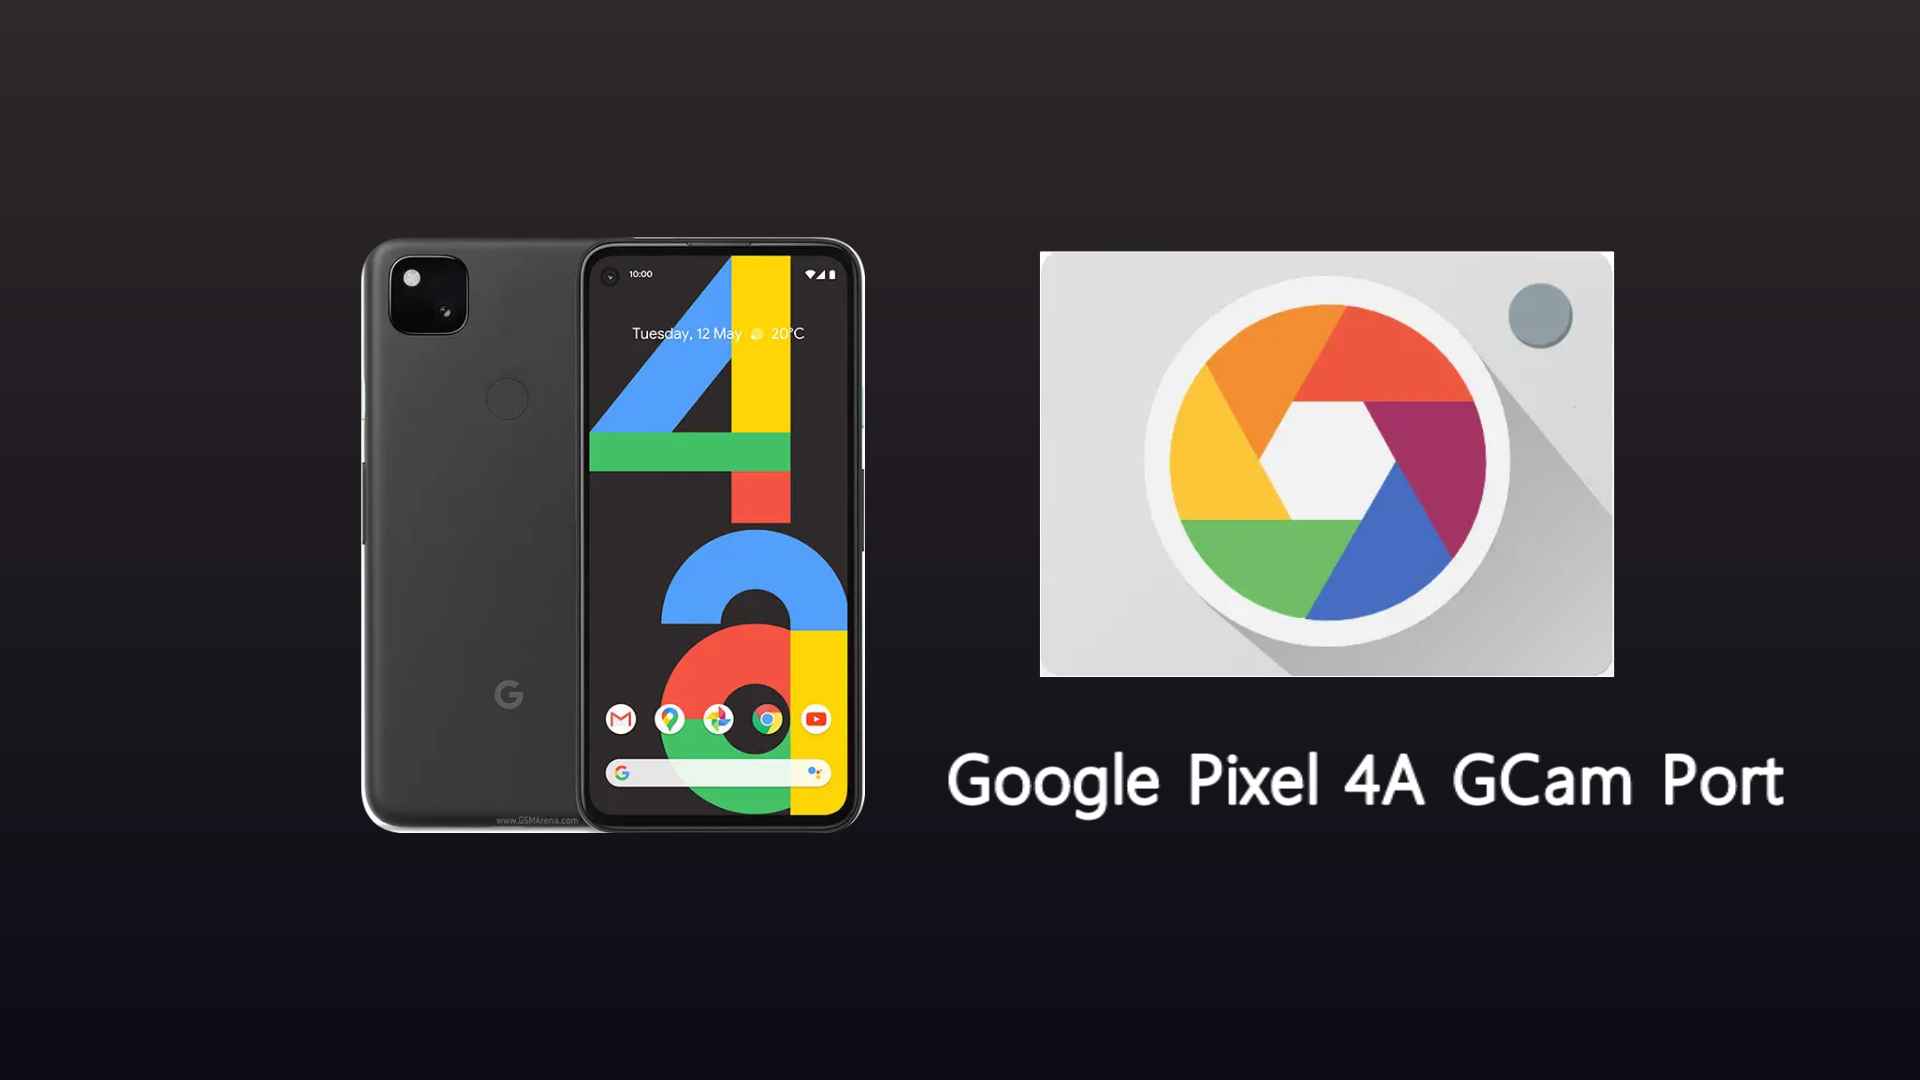 Google Pixel 4a GCam Port